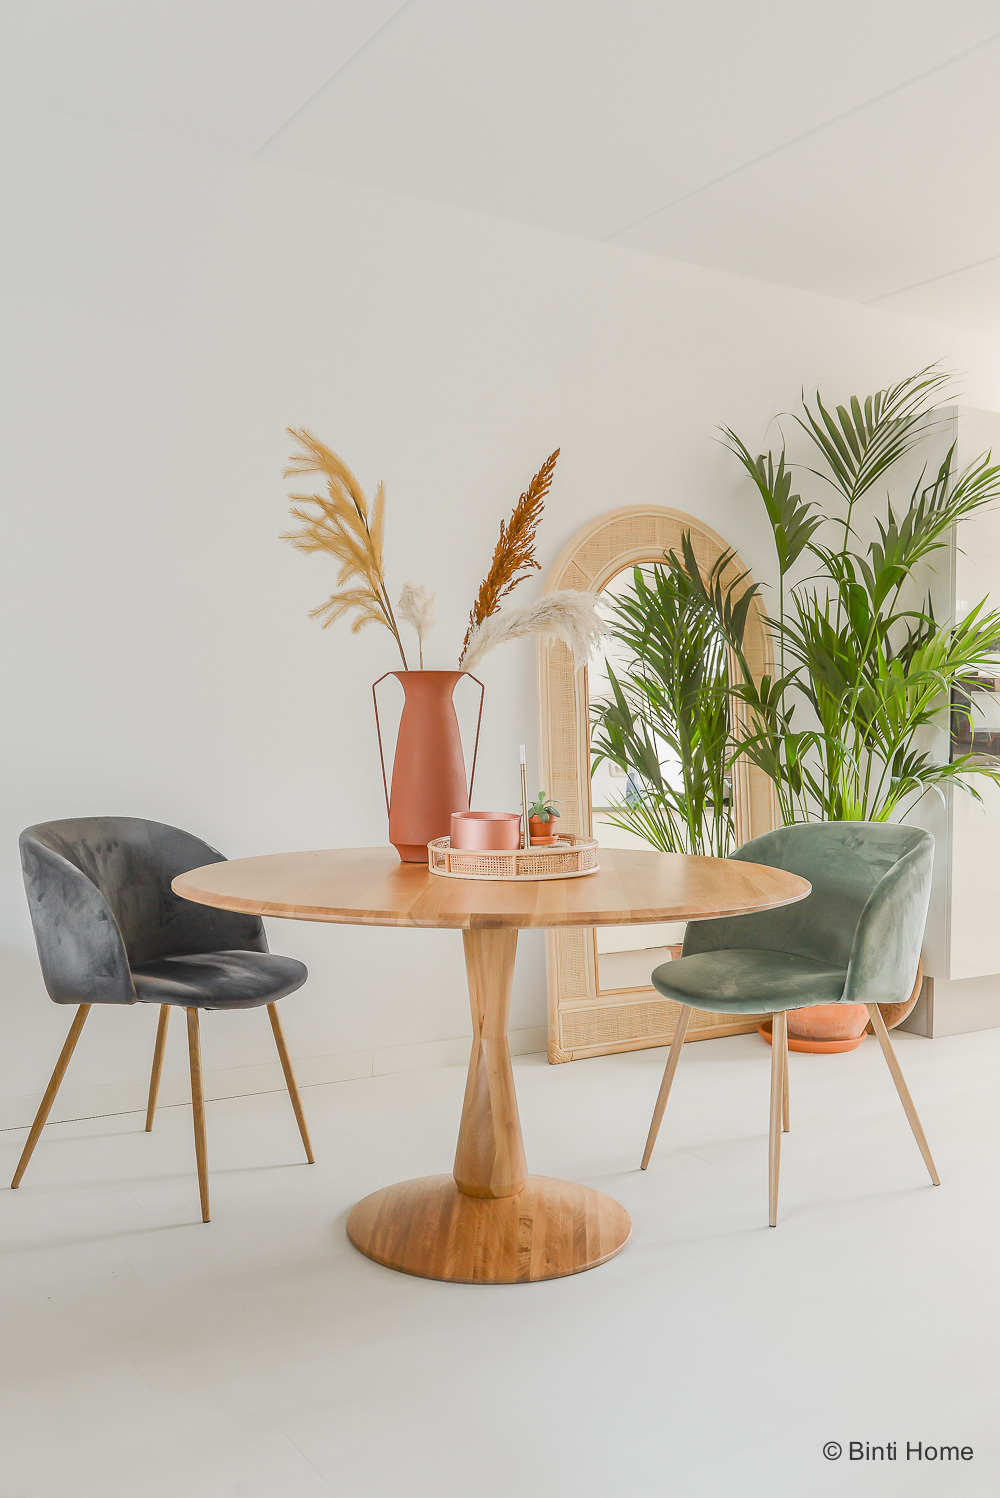 verwarring complexiteit golf Een prachtige ronde design eettafel van eiken - Scandinavisch design -  Binti Home | Interieurontwerpstudio & inspiratie blog